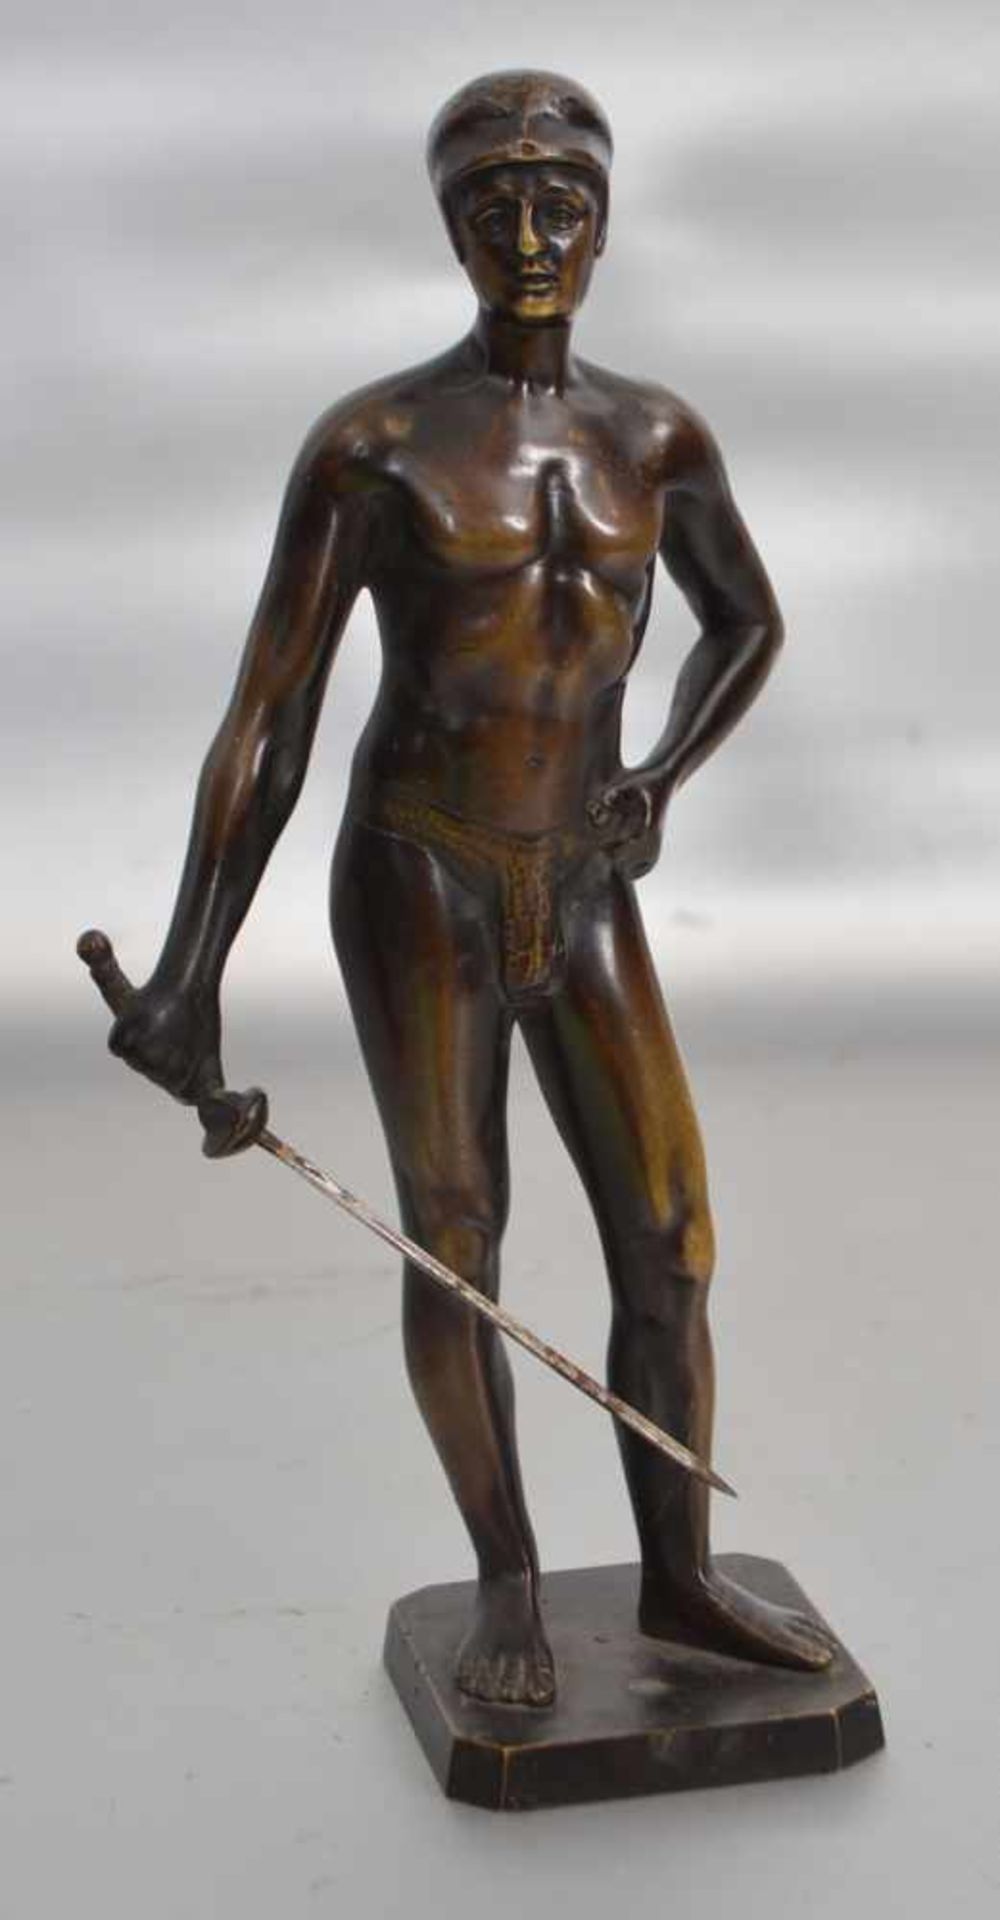 Der FechterBronze, patiniert, auf Sockel stehend, mit Degen, H 24 cm, 20er Jahre